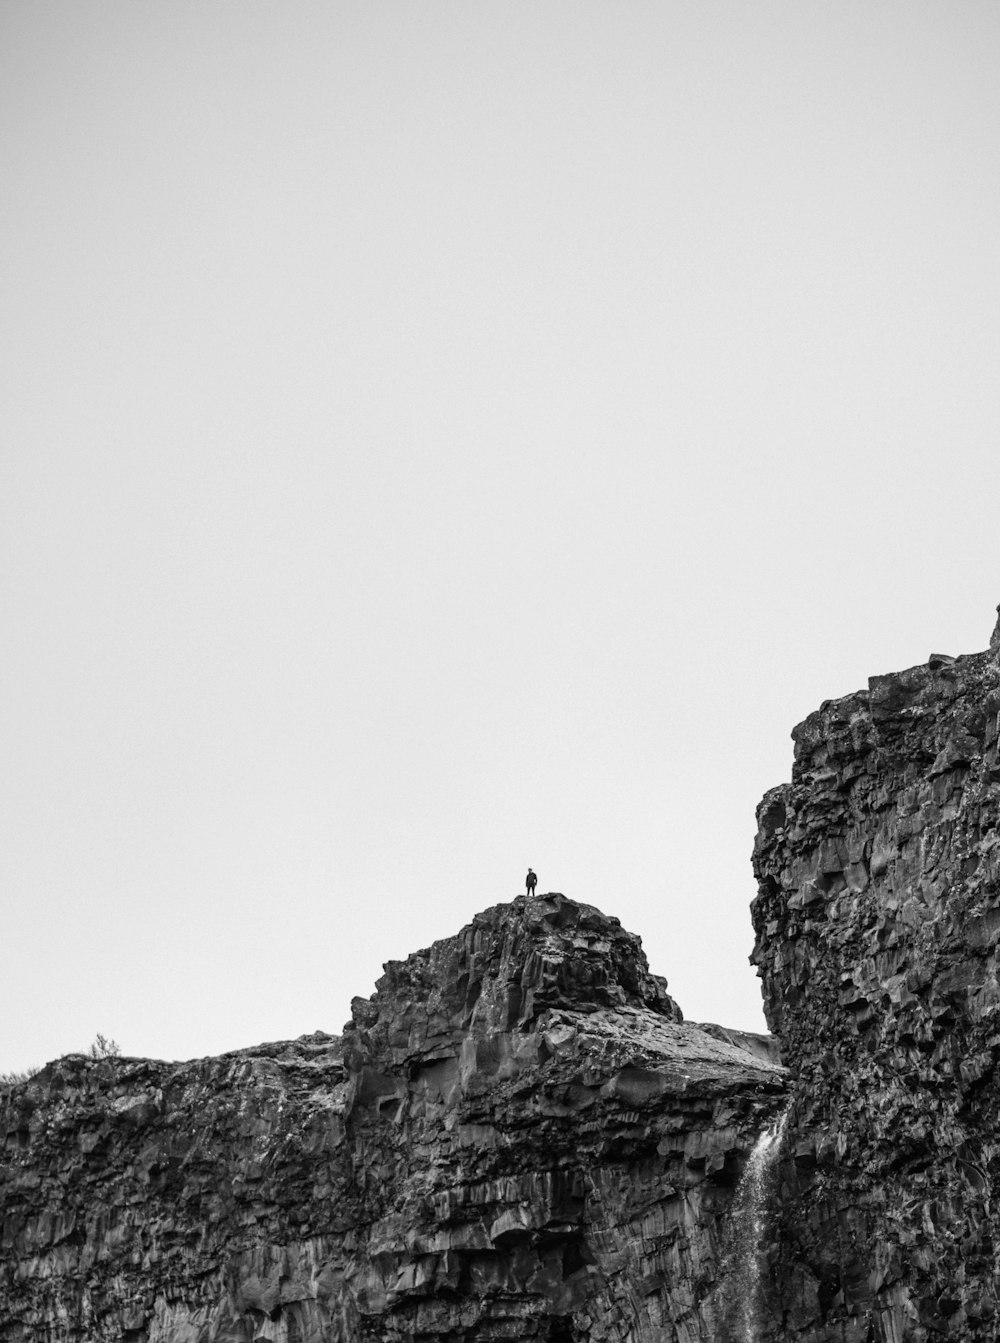 崖の上に立っている人の白黒写真